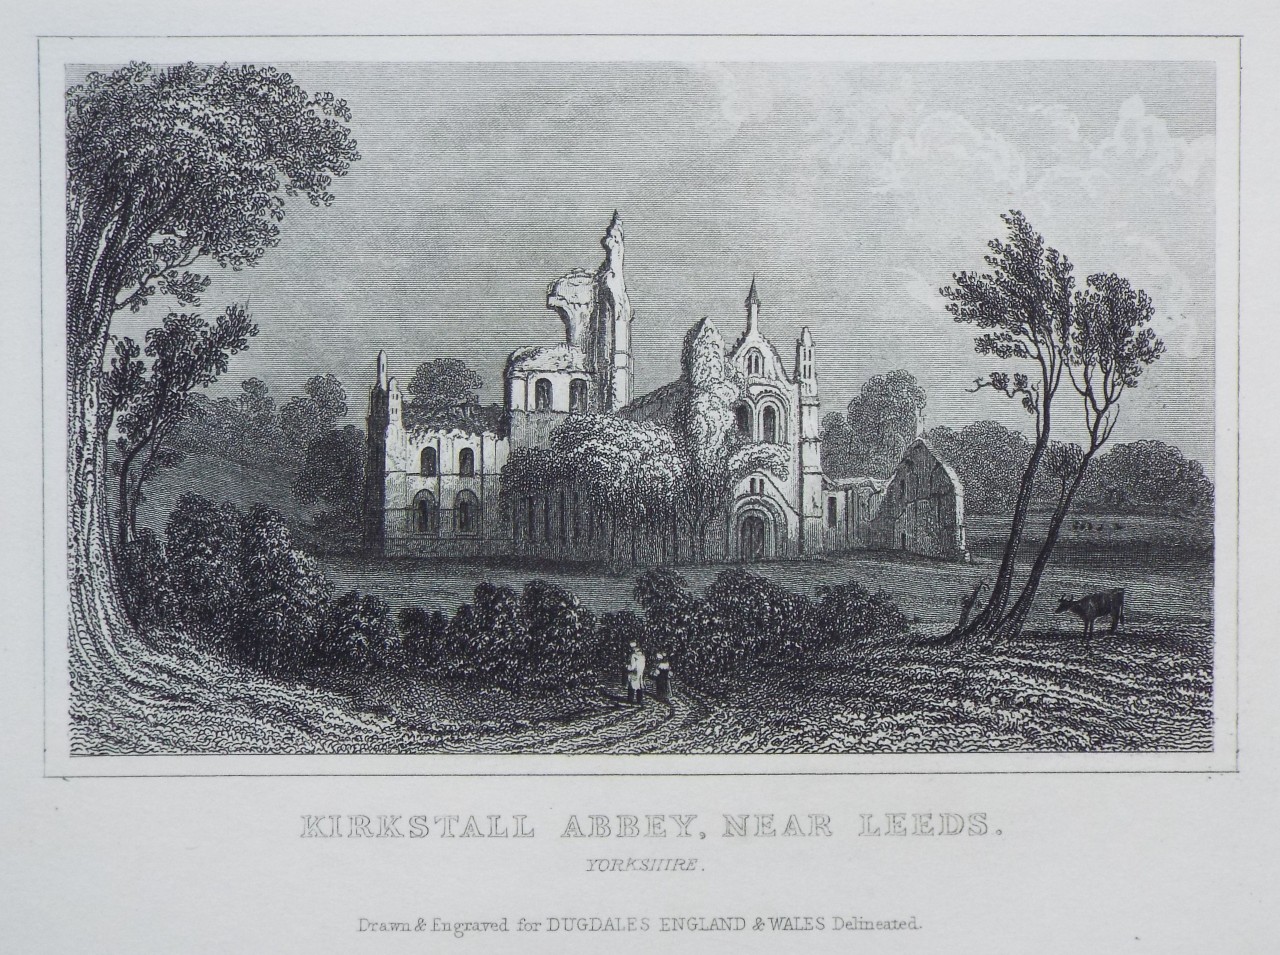 Print - Kirkstall Abbey, near Leeds. Yorkshire.